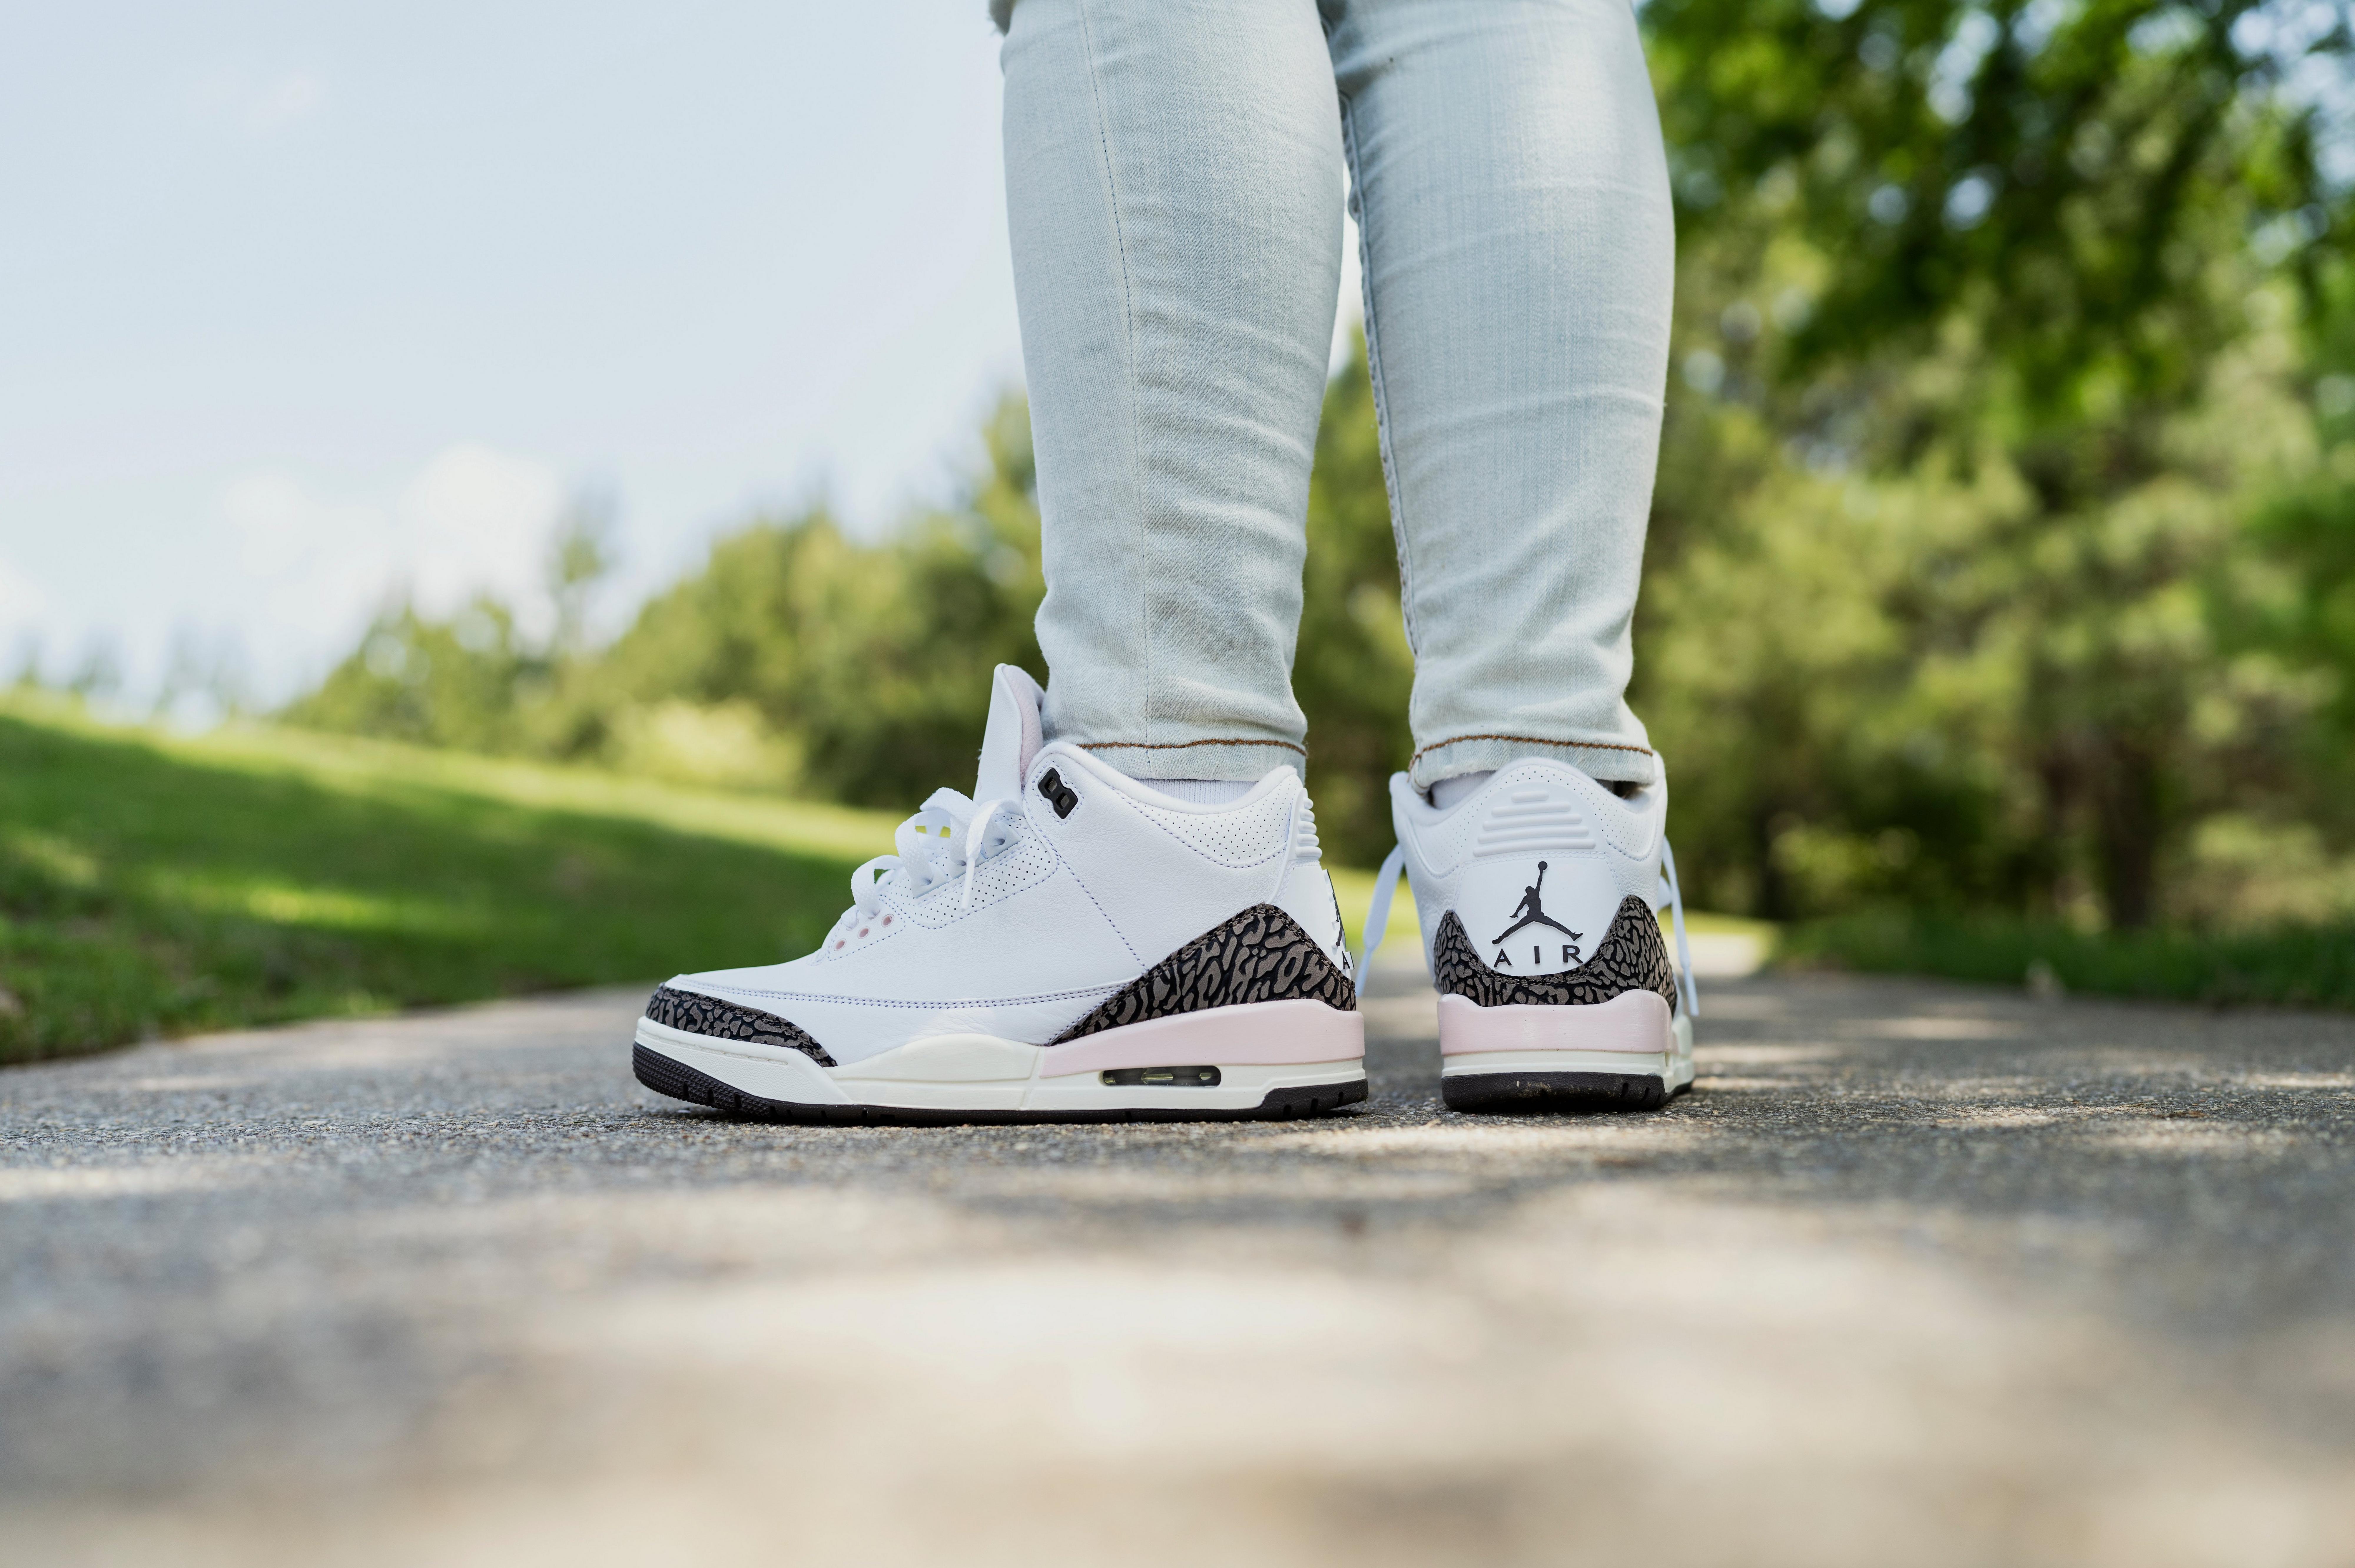 Air Jordan 3 Sneakers